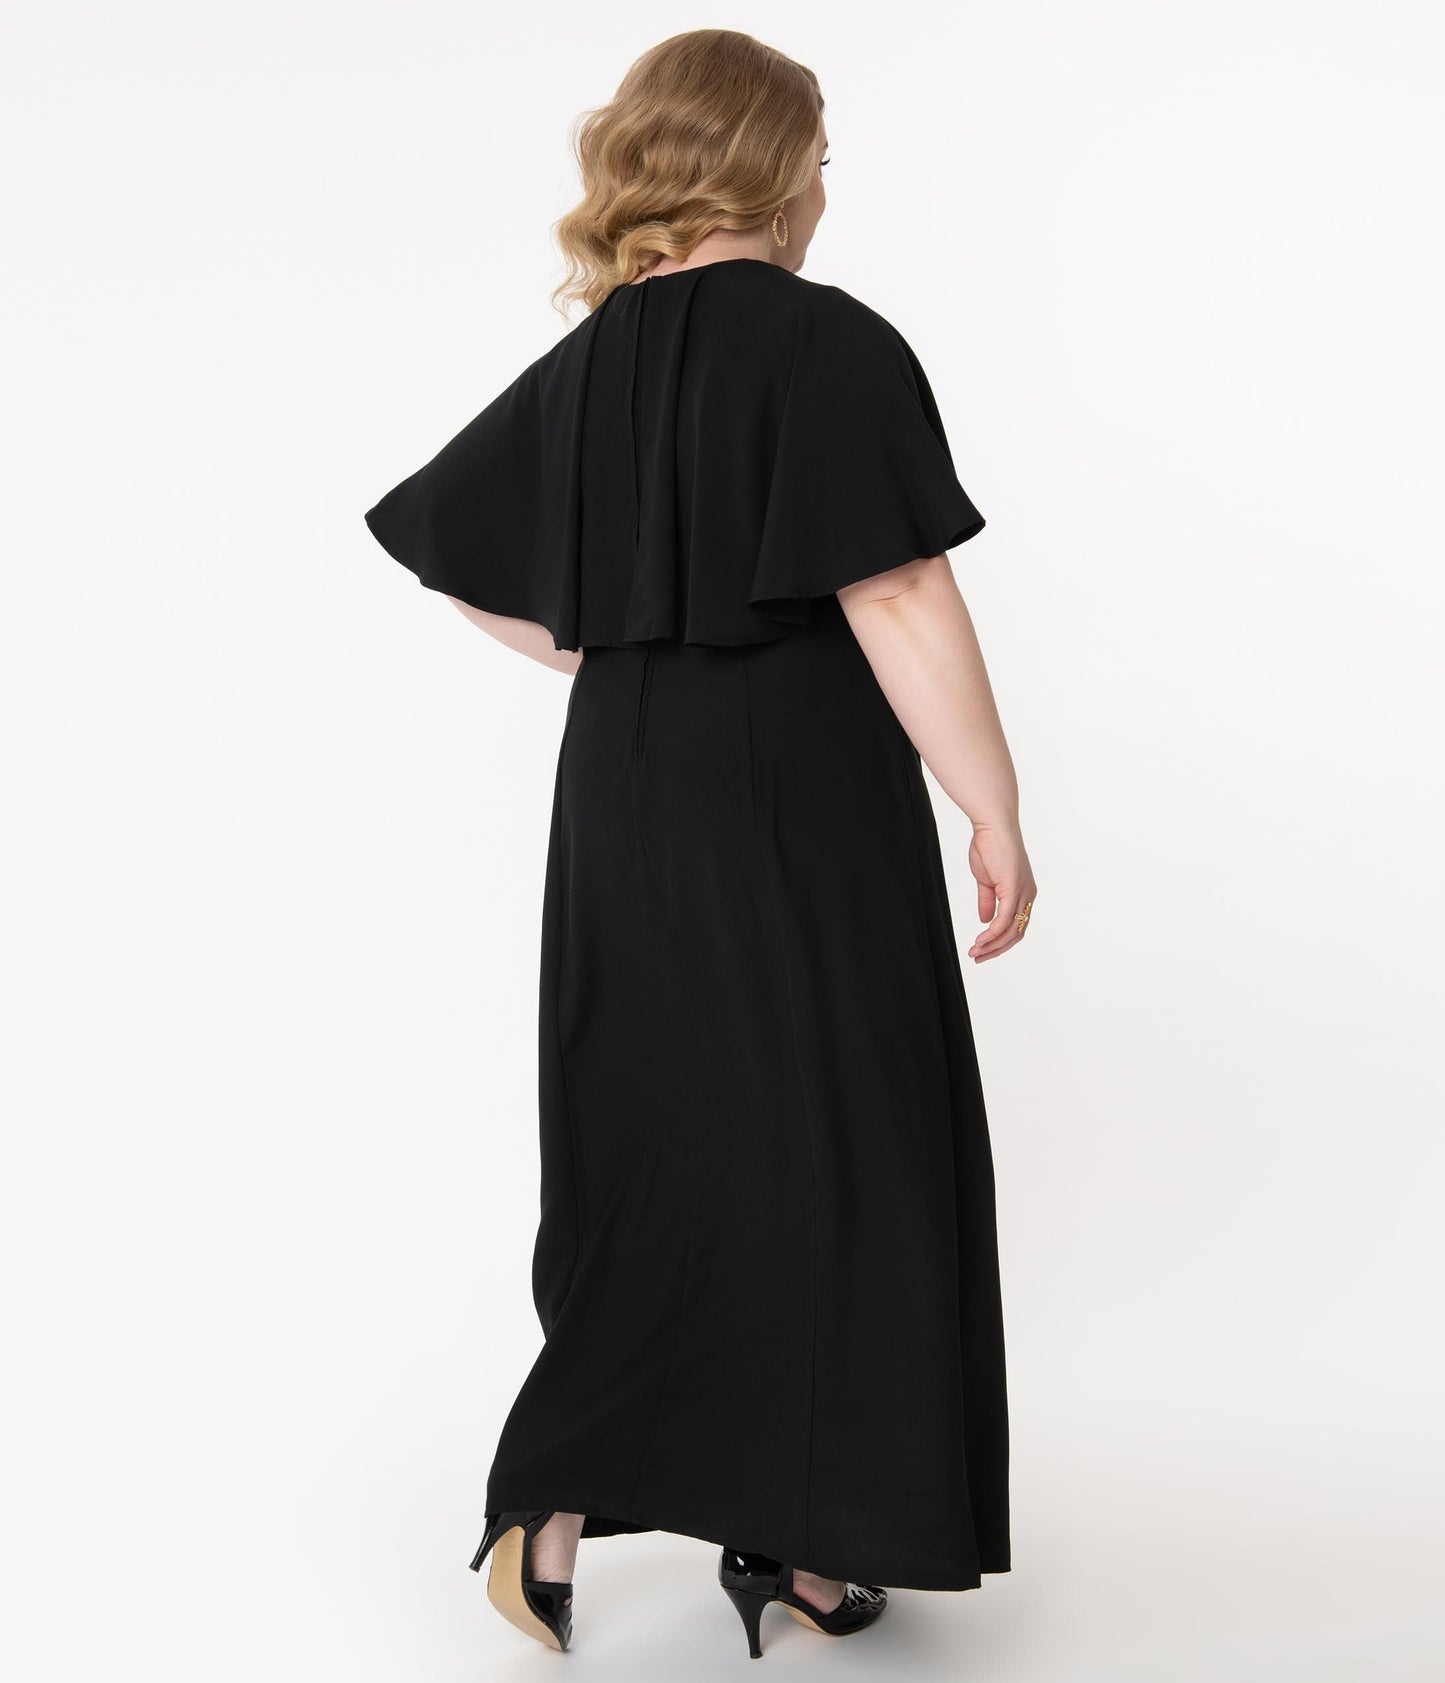 Unique Vintage Plus Size Black Addams Caplette Gown